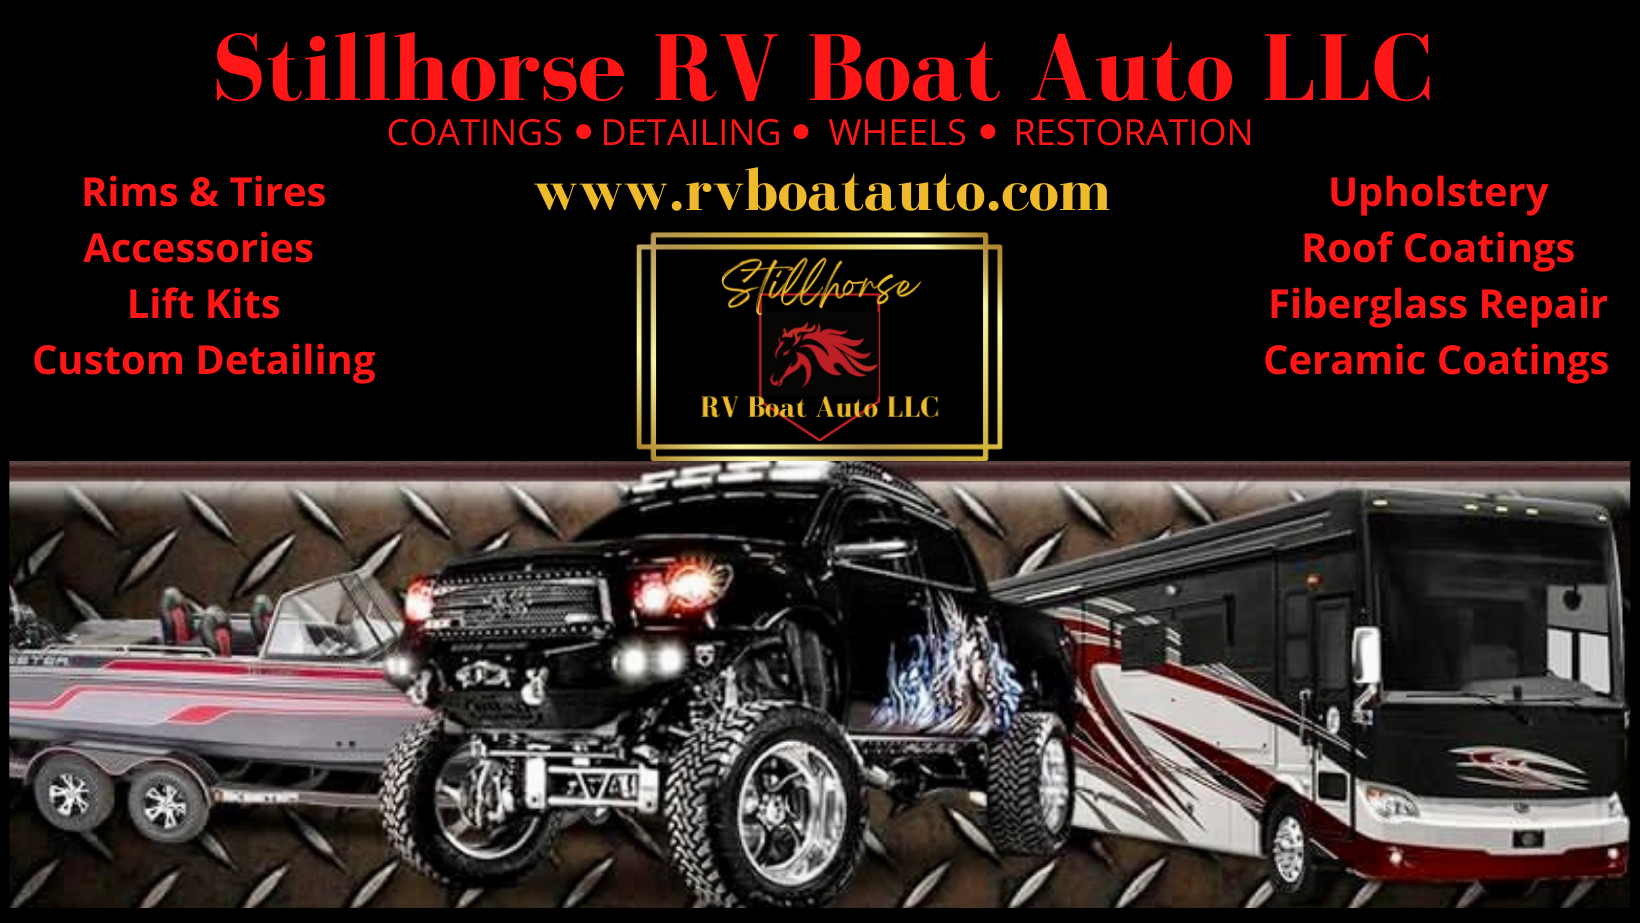 Stillhorse RV Boat Auto LLC